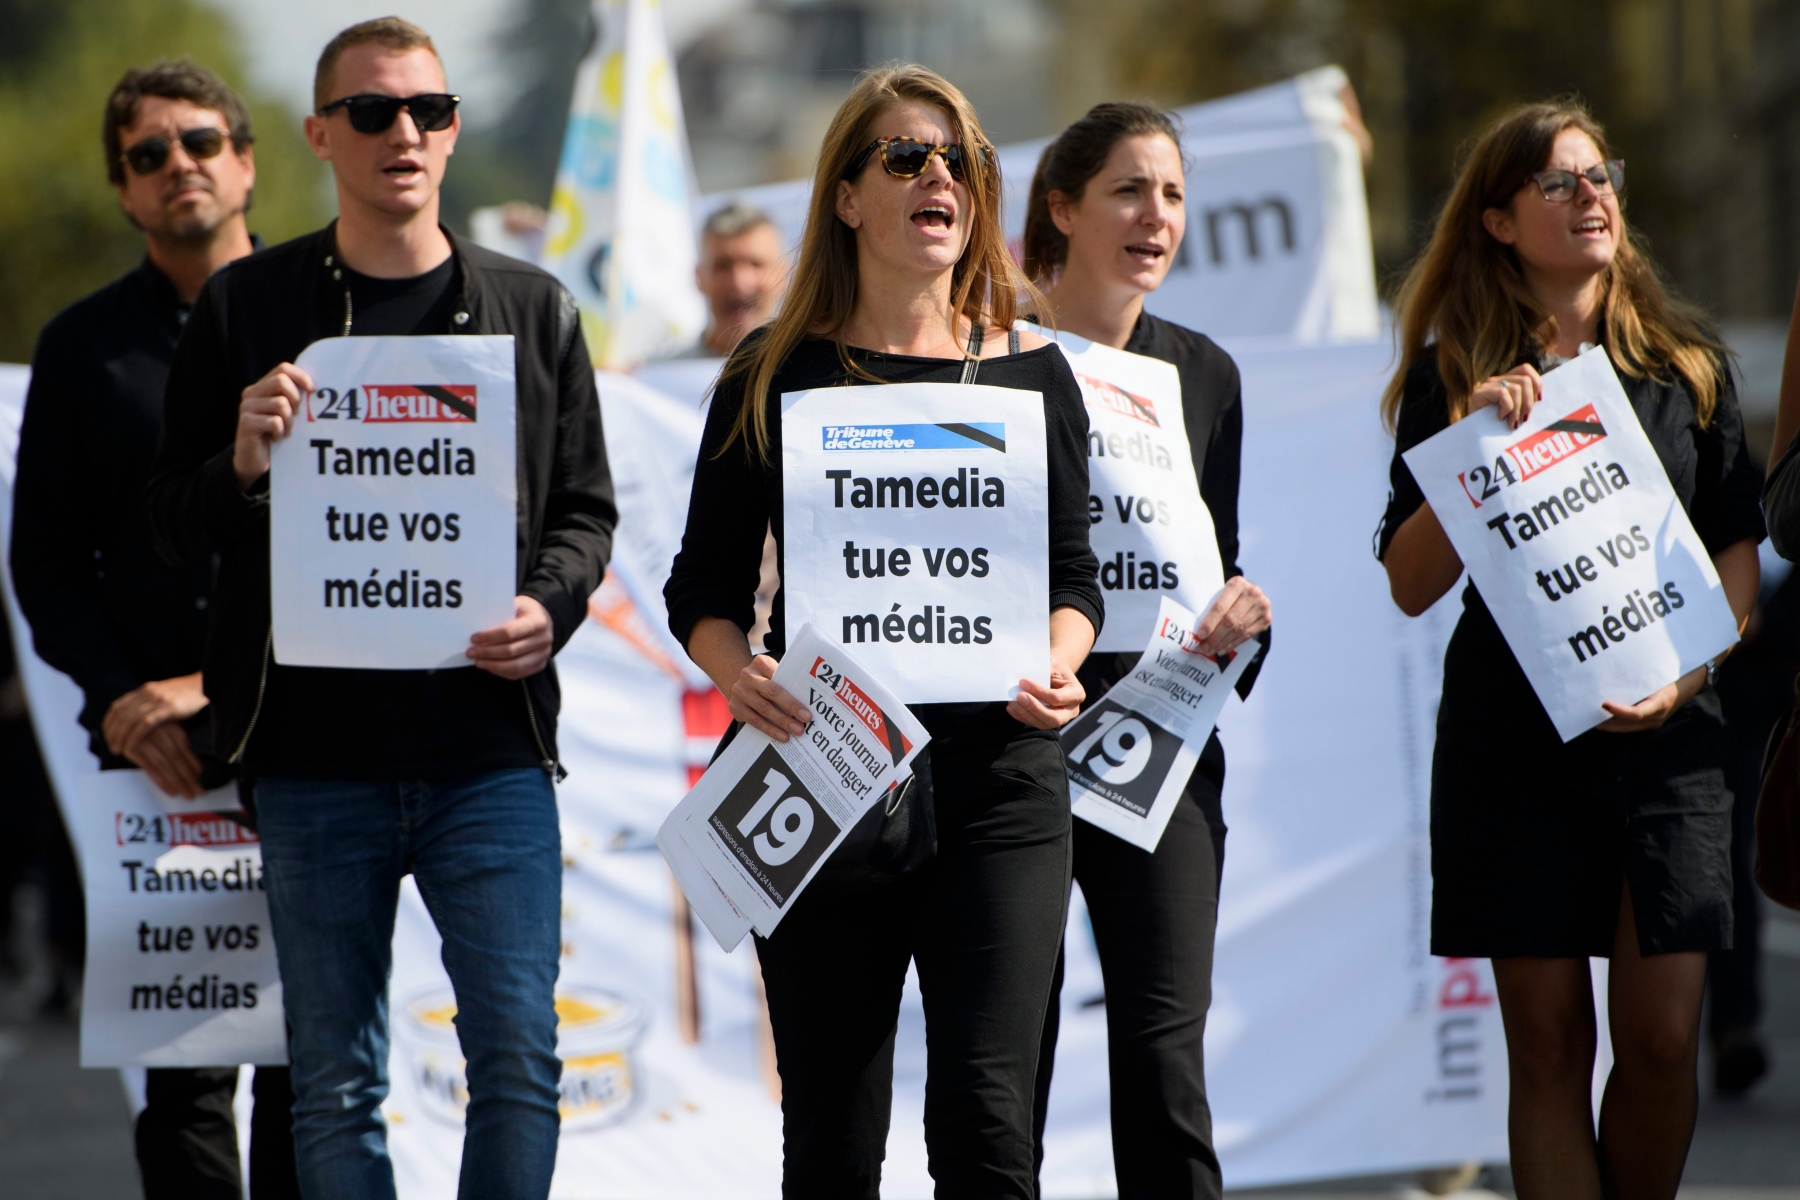 Des membres de la redaction du quotidien "24 Heures" manifestent avec le slogan "Tamedia tue vos medias", ce mardi, 27 septembre 2016, devant la Tour Tamedia a Lausanne. Les employes des journaux "24 Heures" et de la "Tribune de Geneve" manifestent afin de revendiquer le maintien du budget et des effectifs pour la redaction des deux journaux regionaux. (KEYSTONE/Laurent Gillieron) SCHWEIZ TAMEDIA STELLENABBAU ROMANDIE